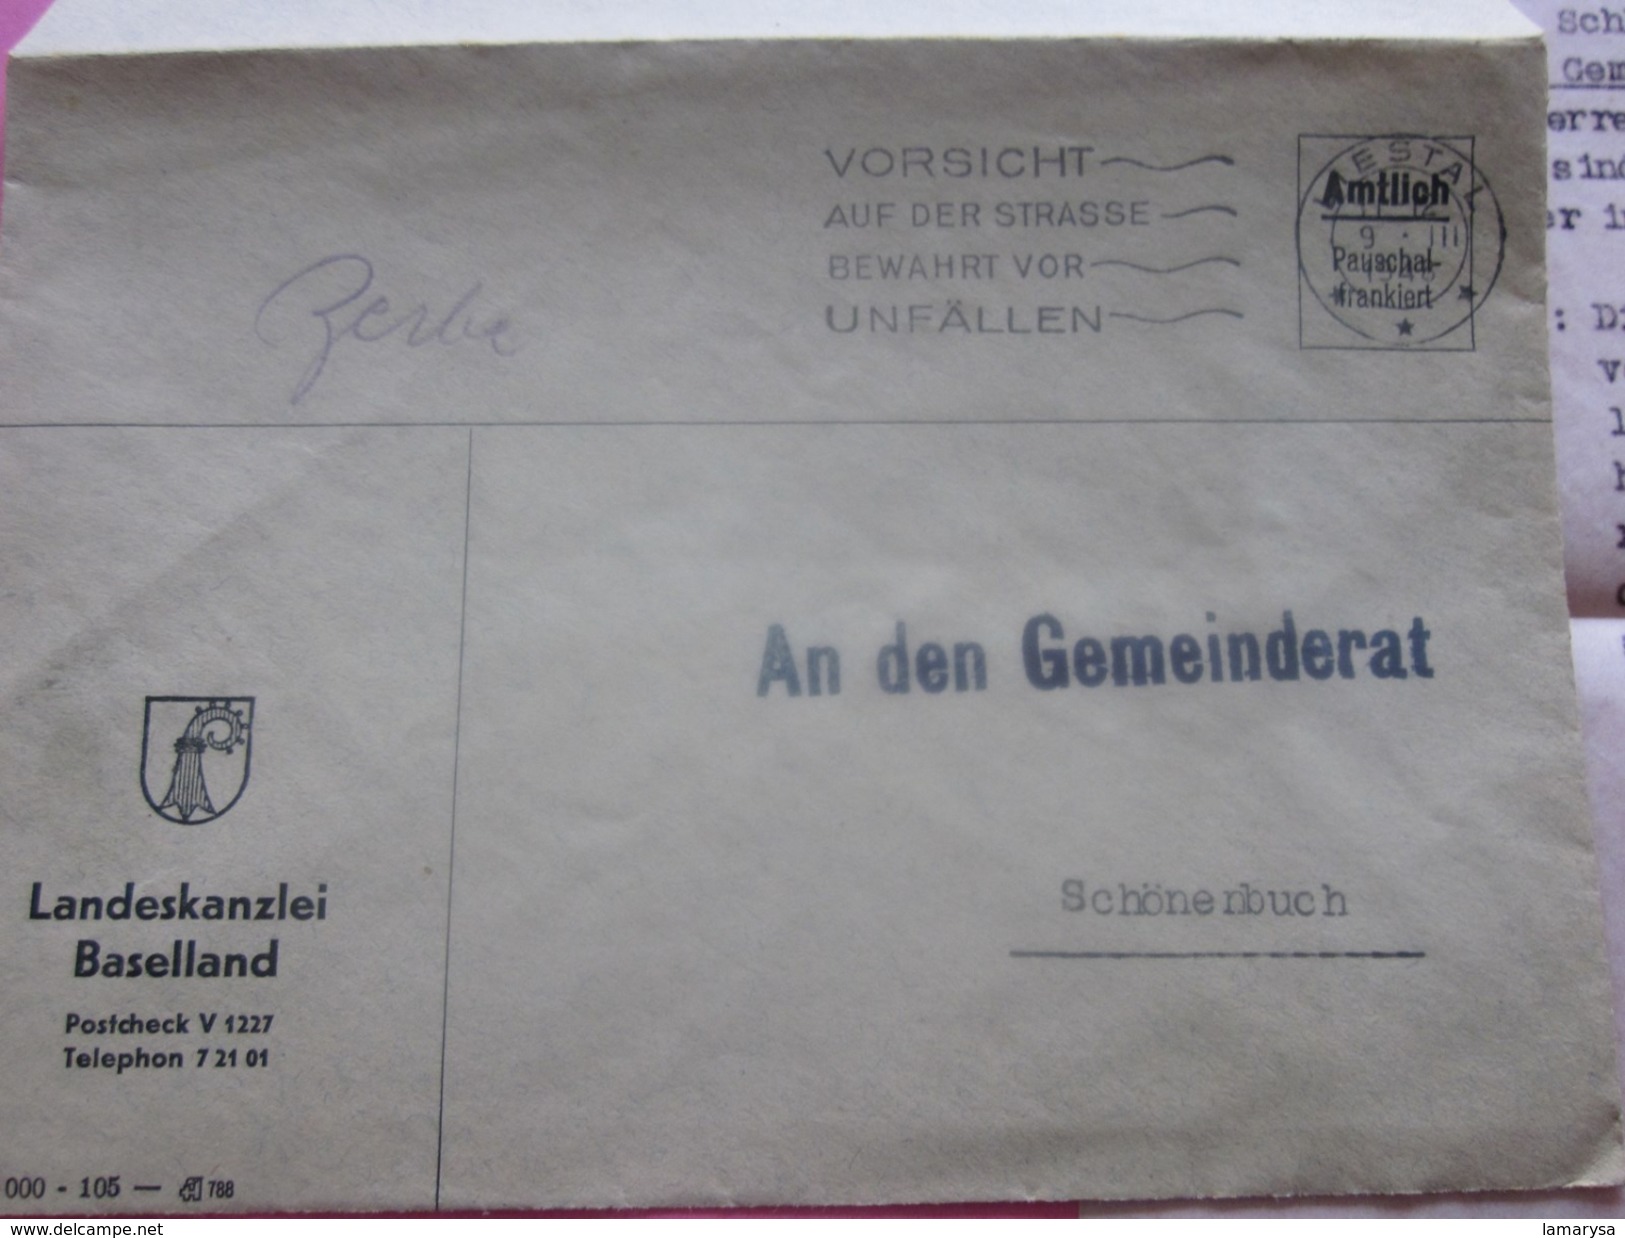 LIESTAL-1948 Baselland-Amtlich Pauschal-franklert-  Suisse Marcophilie  Schonenbuch-Lettre Affranchissement Abonné - Poststempel